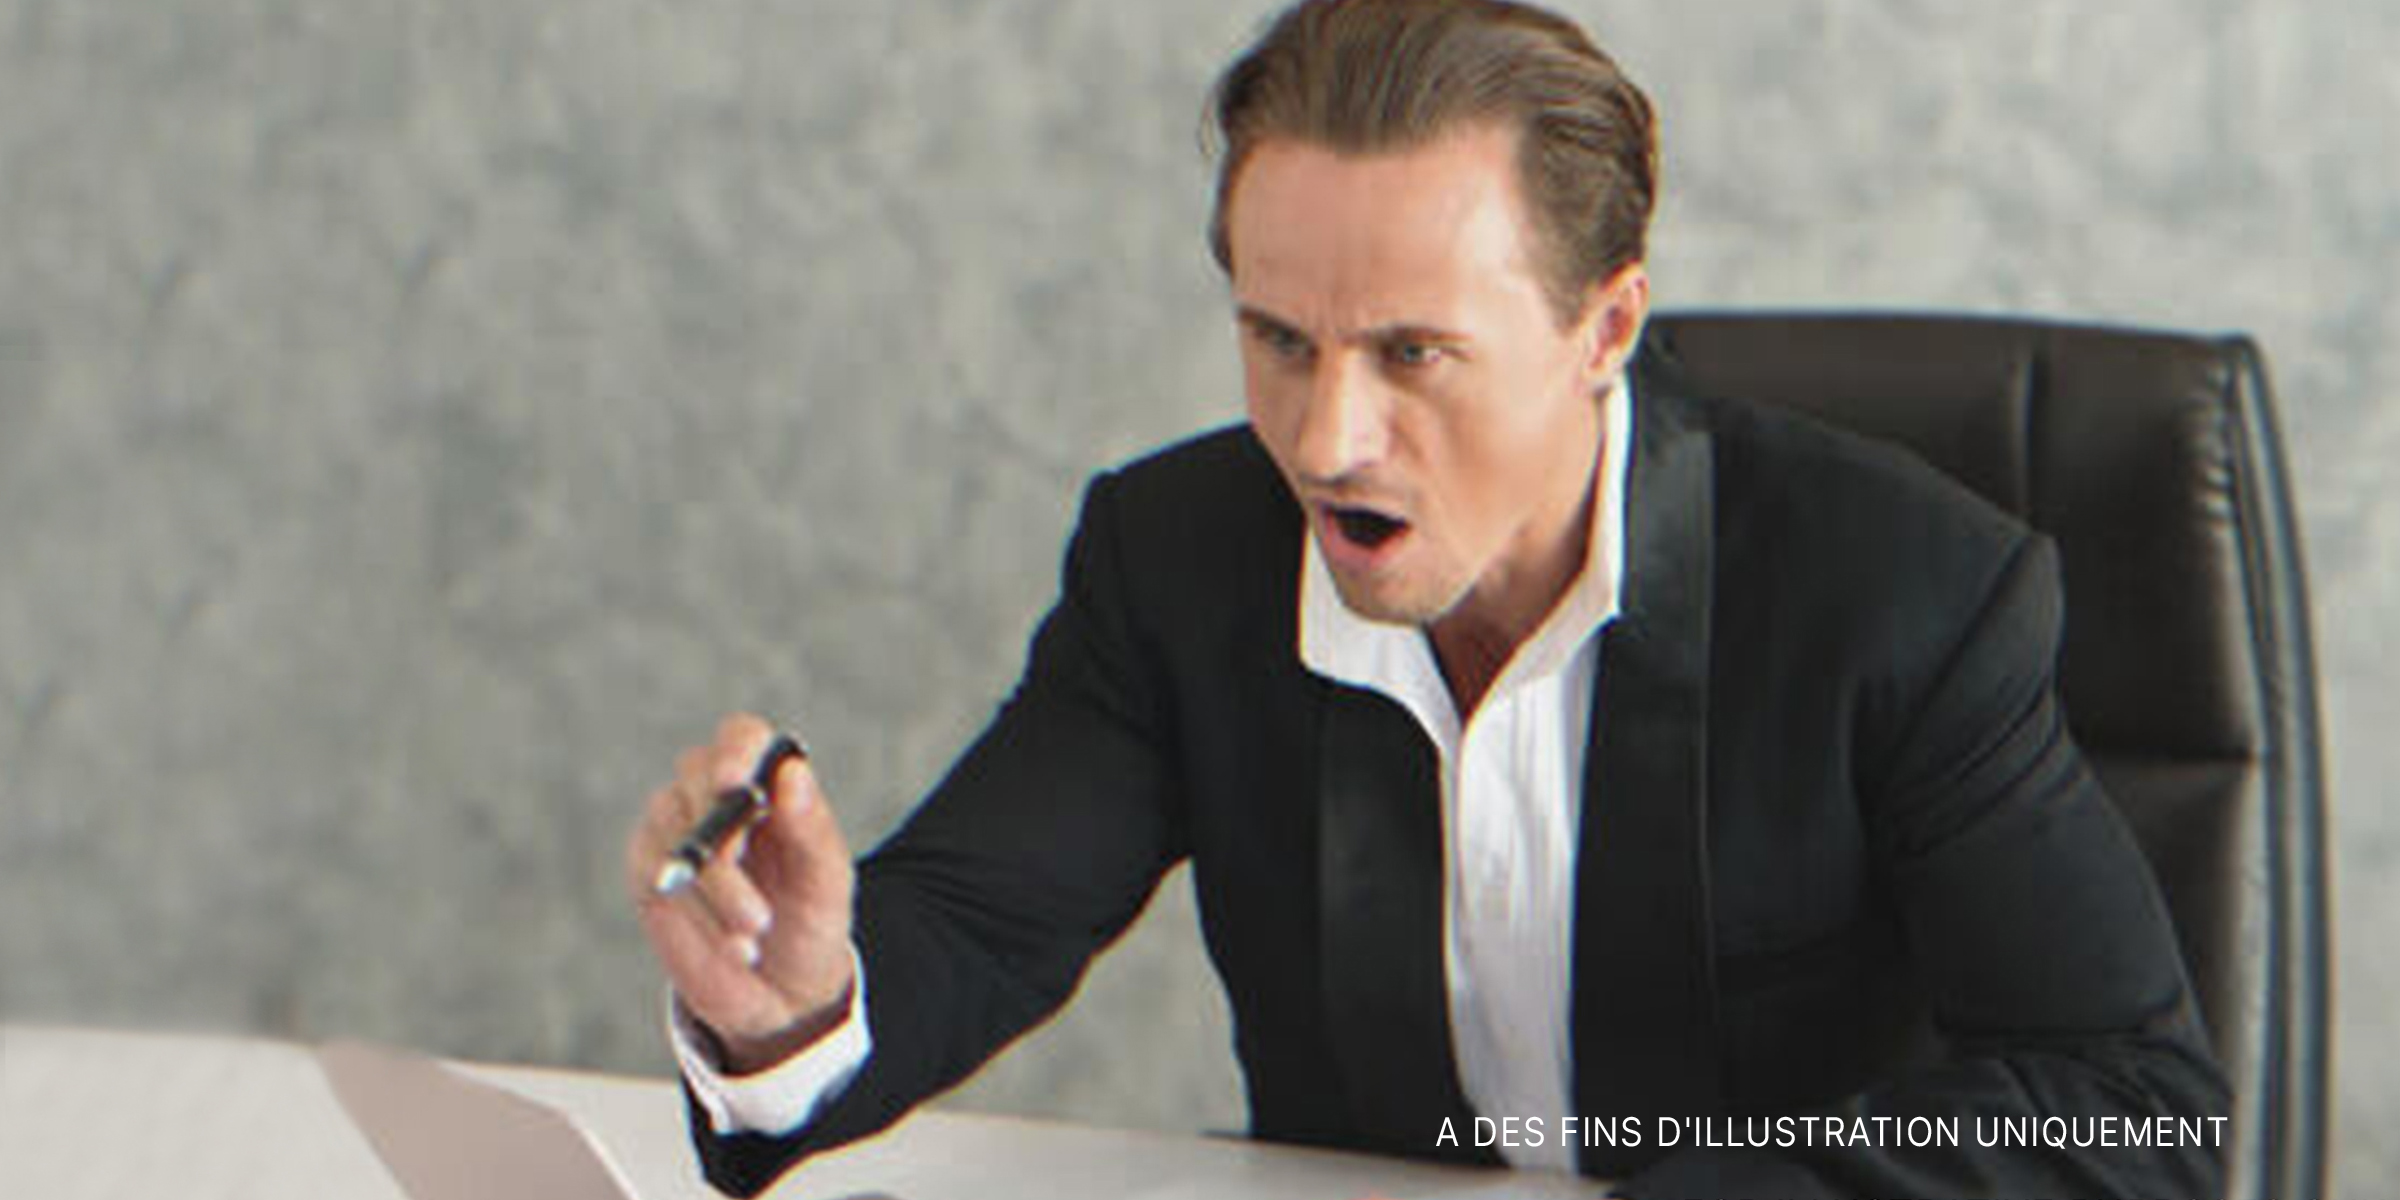 Homme assis sur un bureau, pointant du doigt avec colère. | Source : Shutterstock